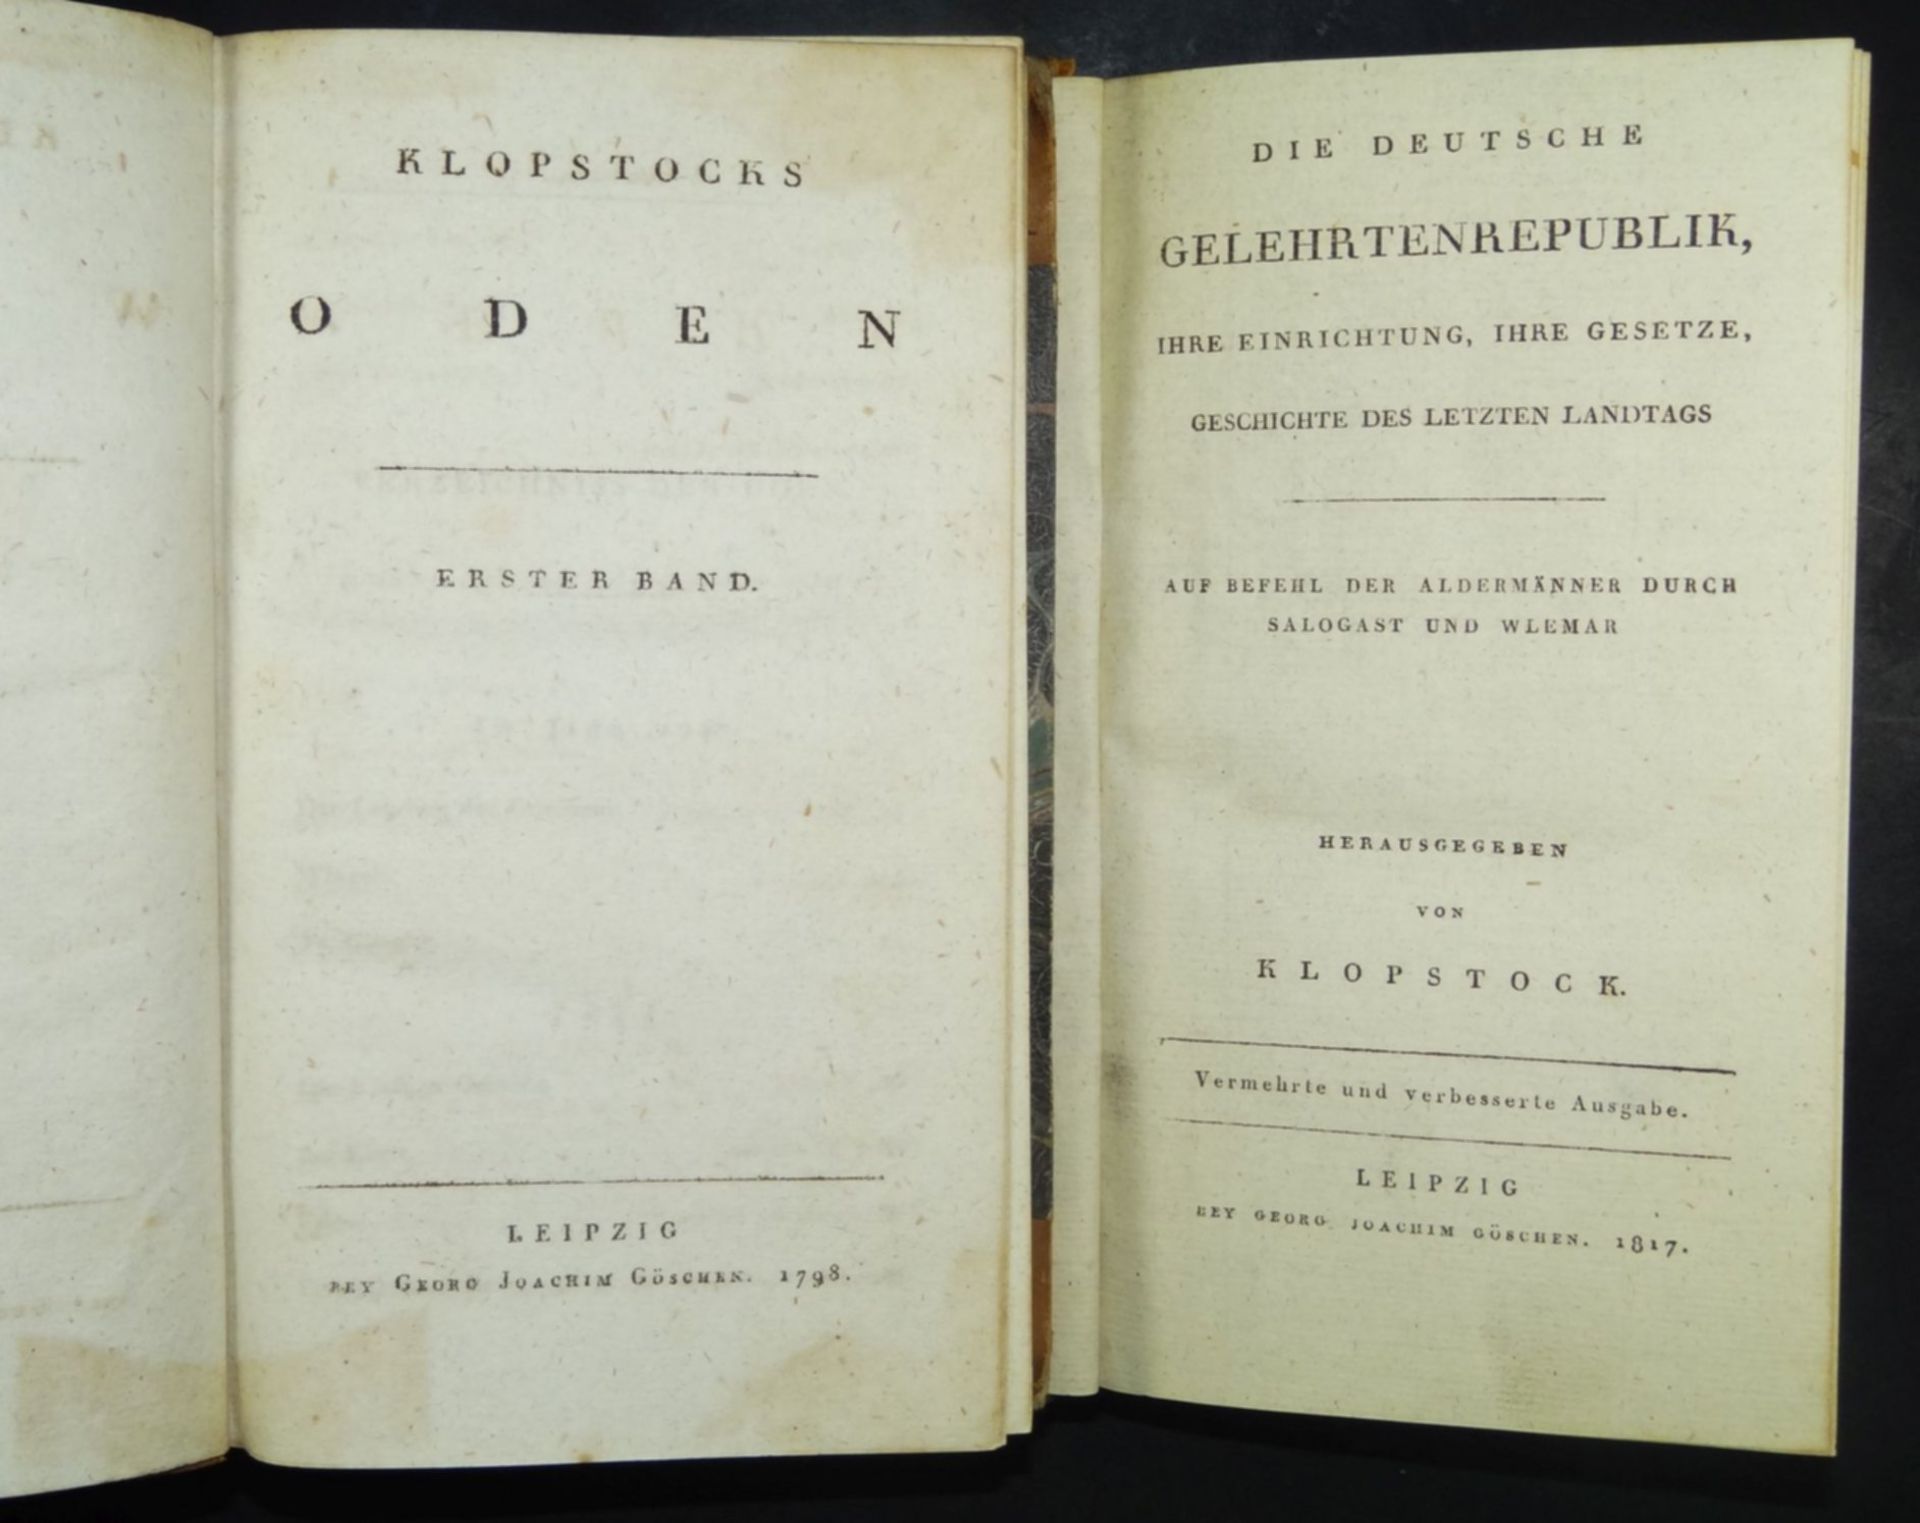 "Klopstocks Werke" von 1797 an, 12 Bände, Alters-u. Gebrauchsspure- - -22.61 % buyer's premium on - Bild 3 aus 7